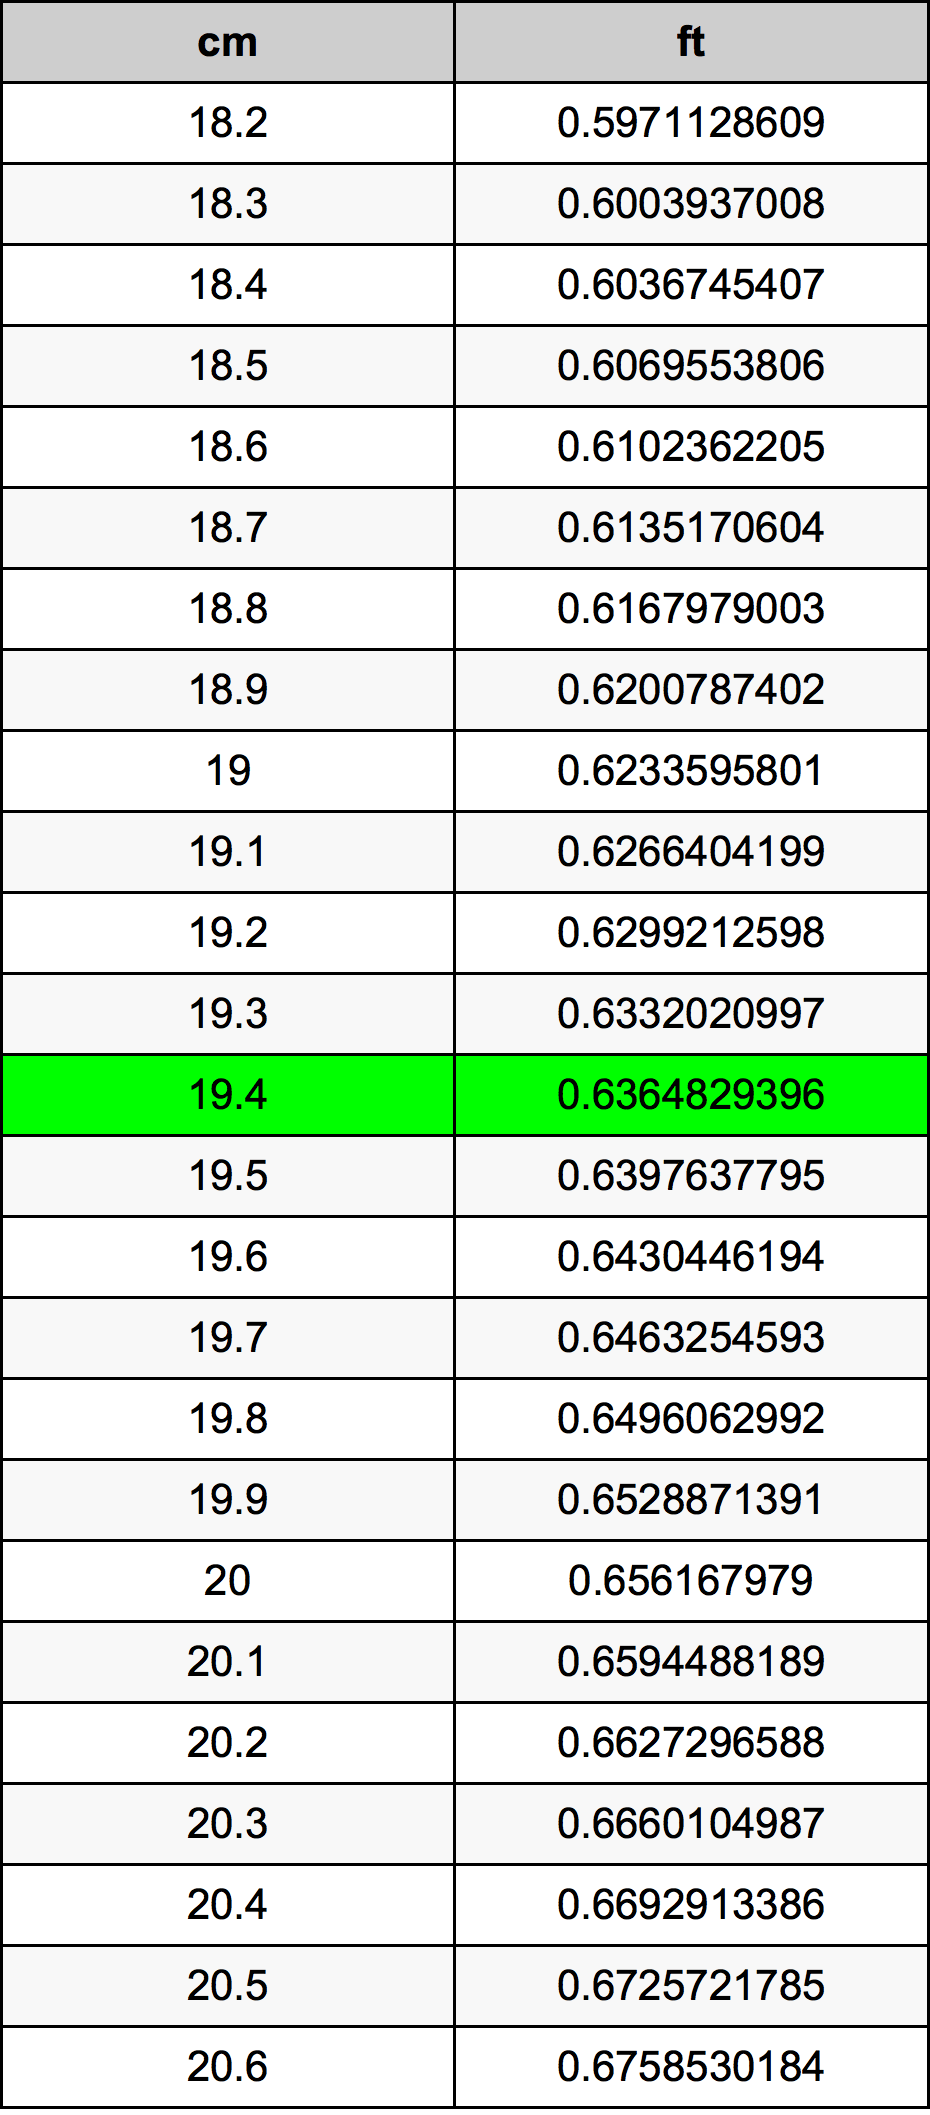 19.4 Centiméter átszámítási táblázat